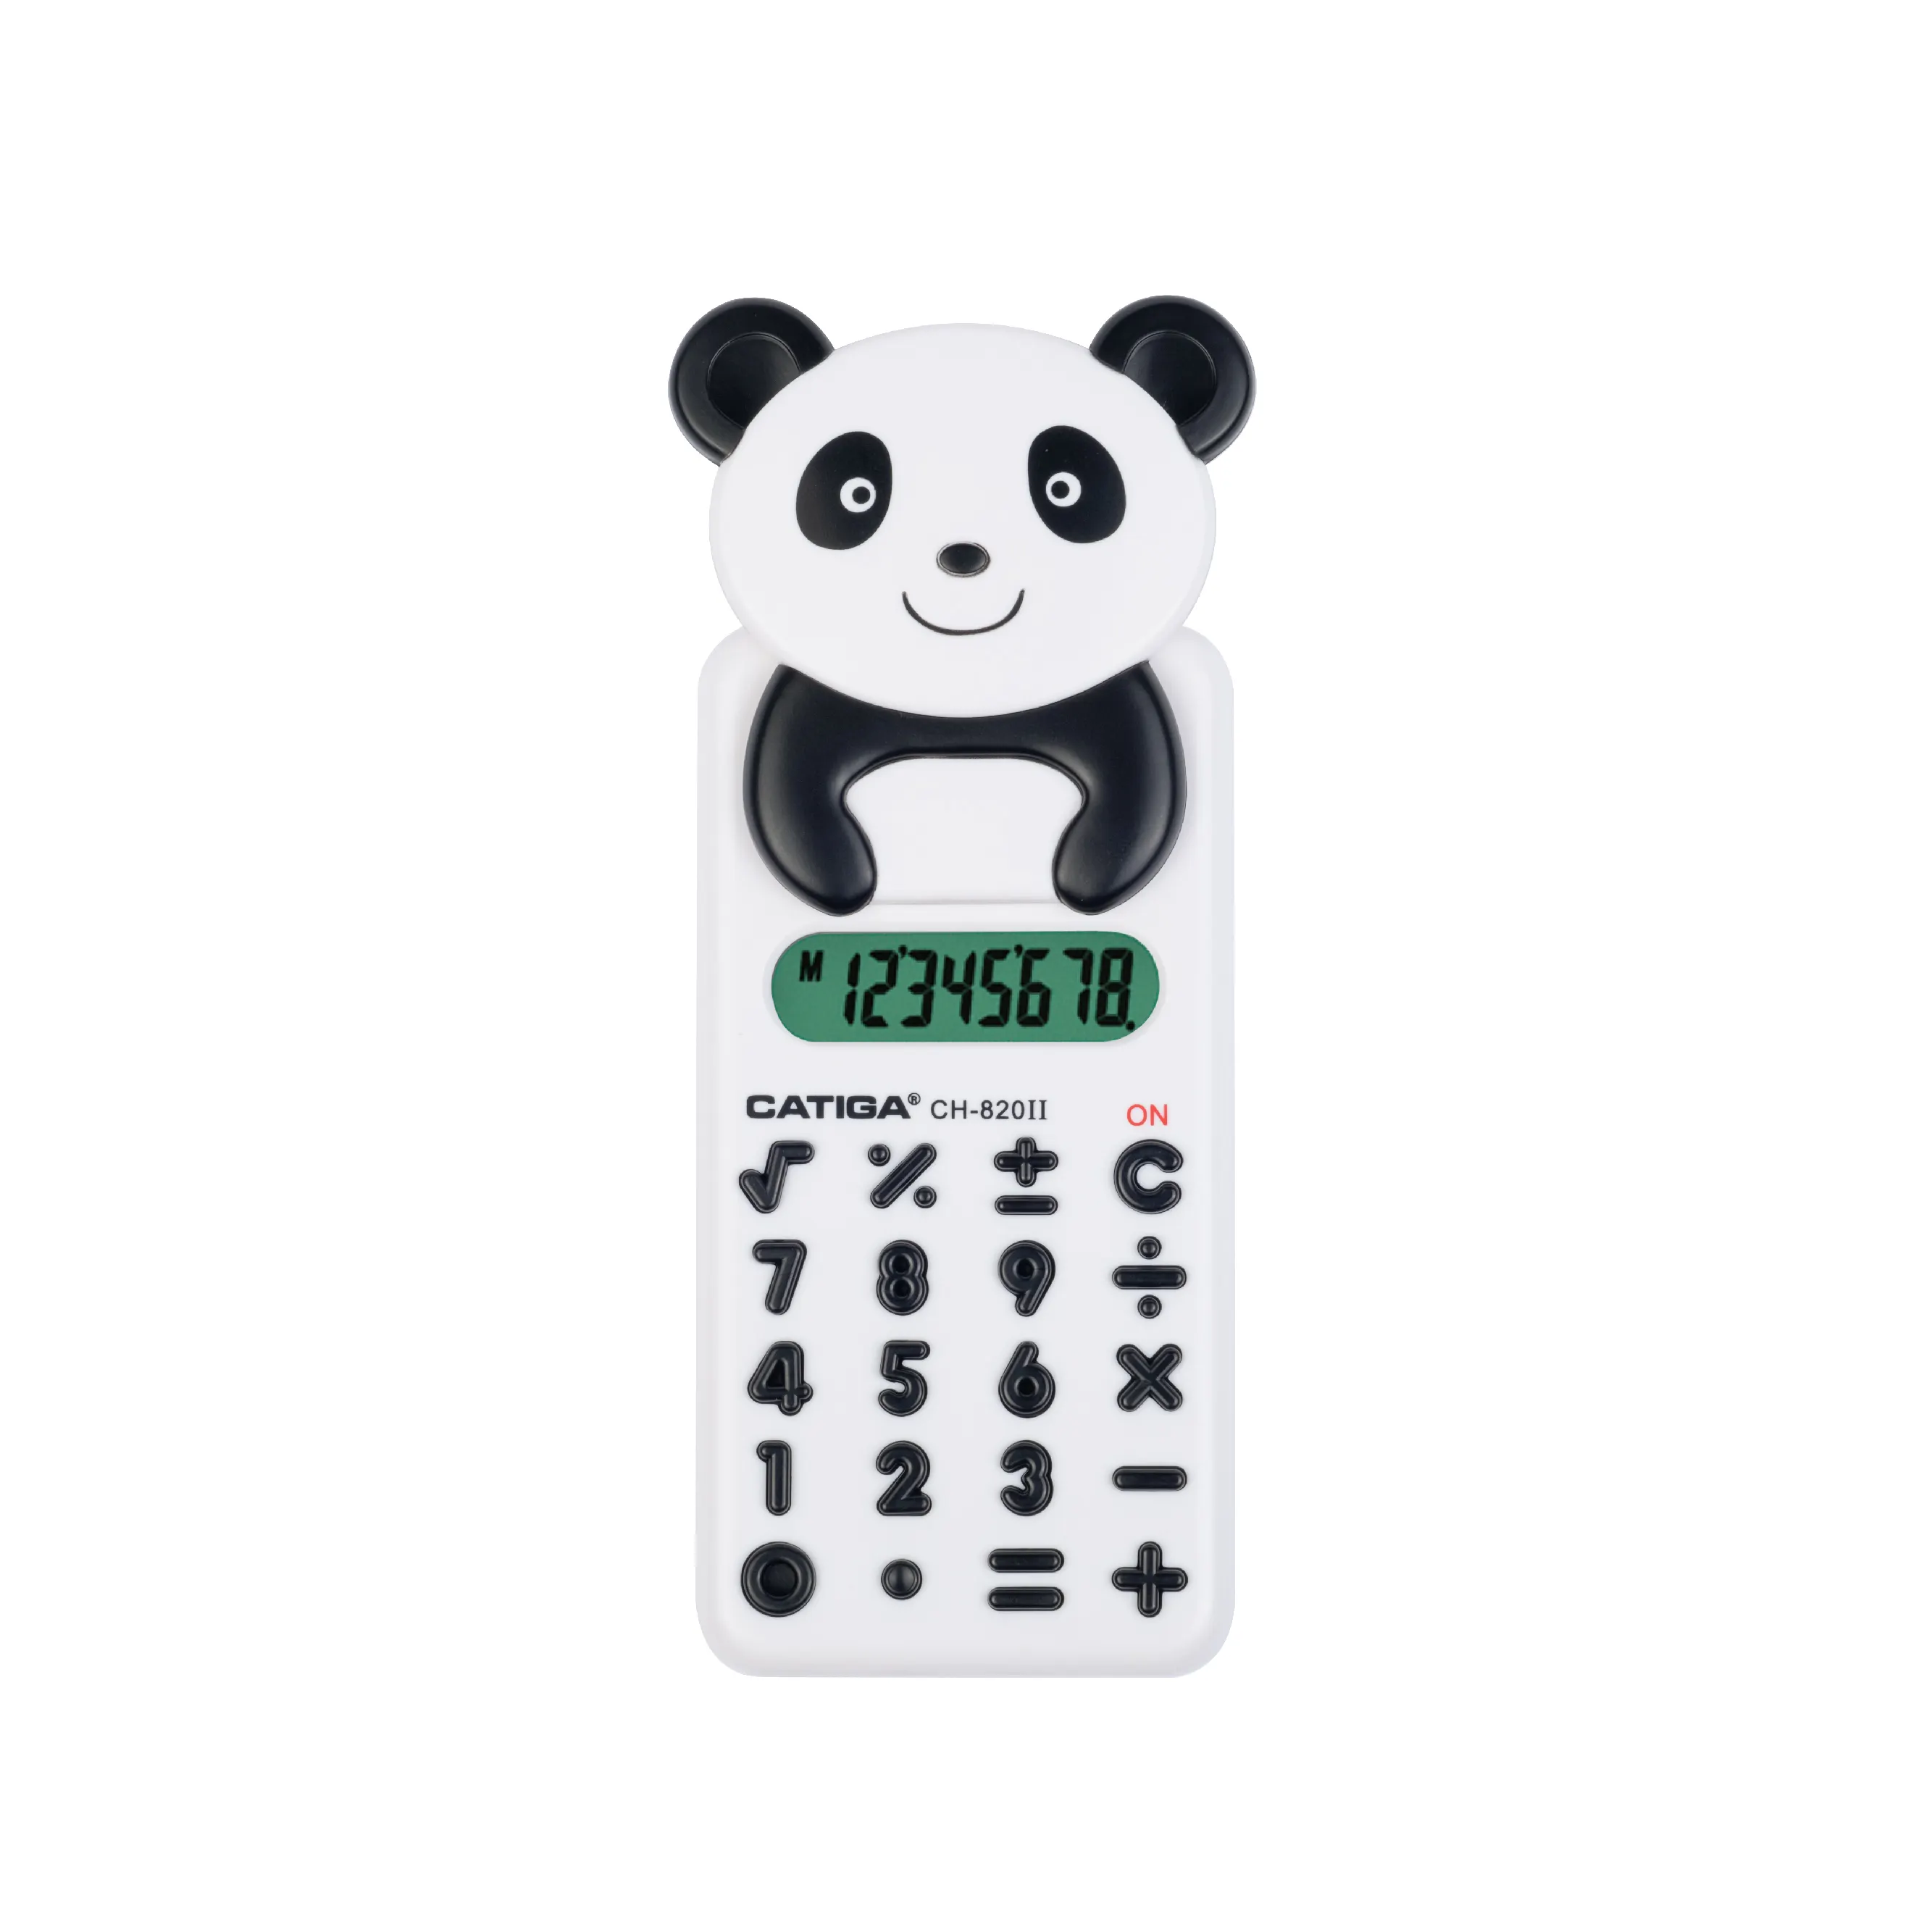 8 dígitos apariencia de dibujos animados Panda apariencia CATIGA calculadora solar calculadora electrónica calculadora de mano